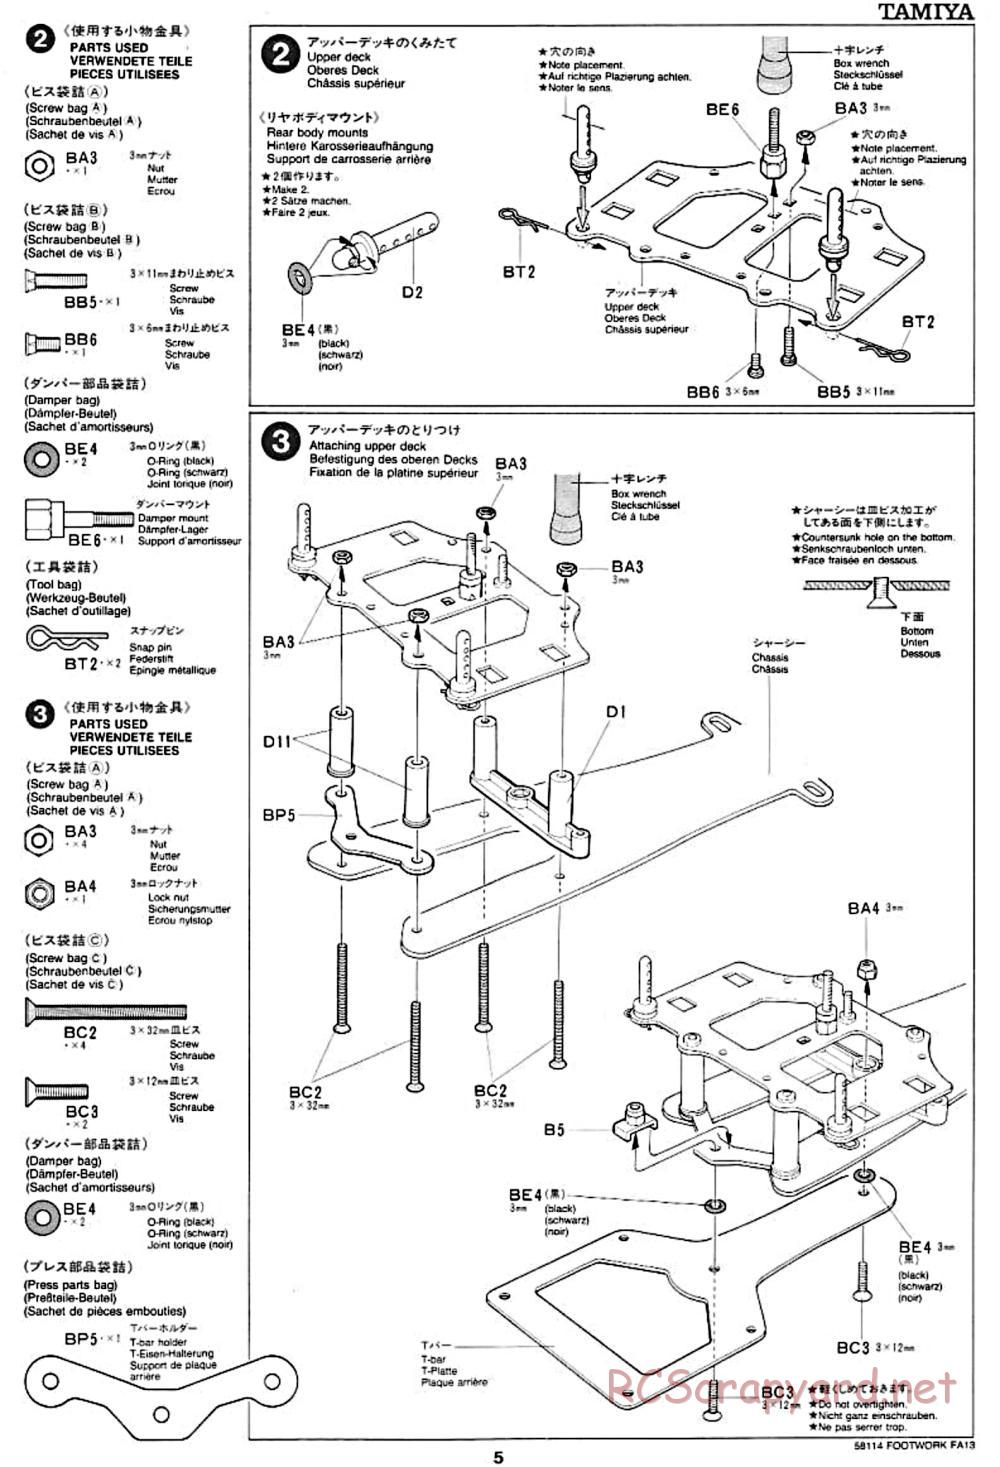 Tamiya - Footwork FA13 Mugen Honda - F102 Chassis - Manual - Page 5